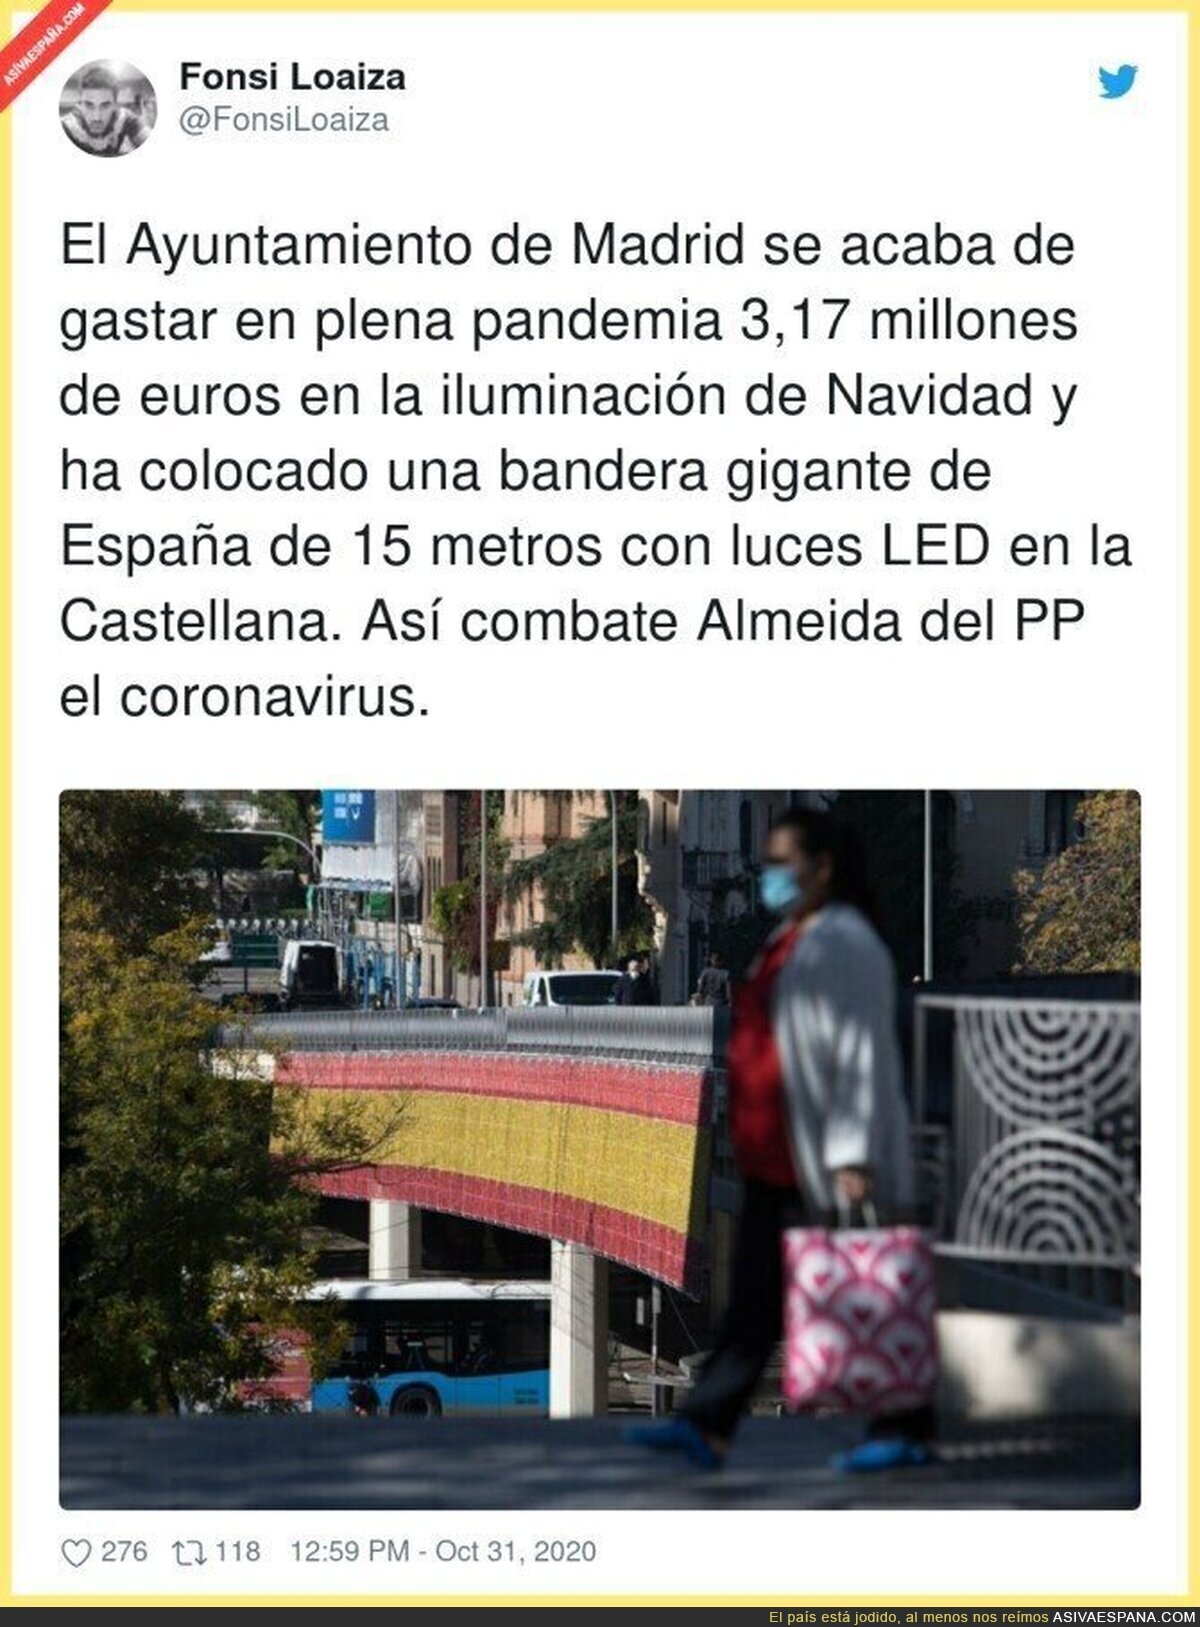 ¿Qué podría salir mal en Madrid con esta gente?